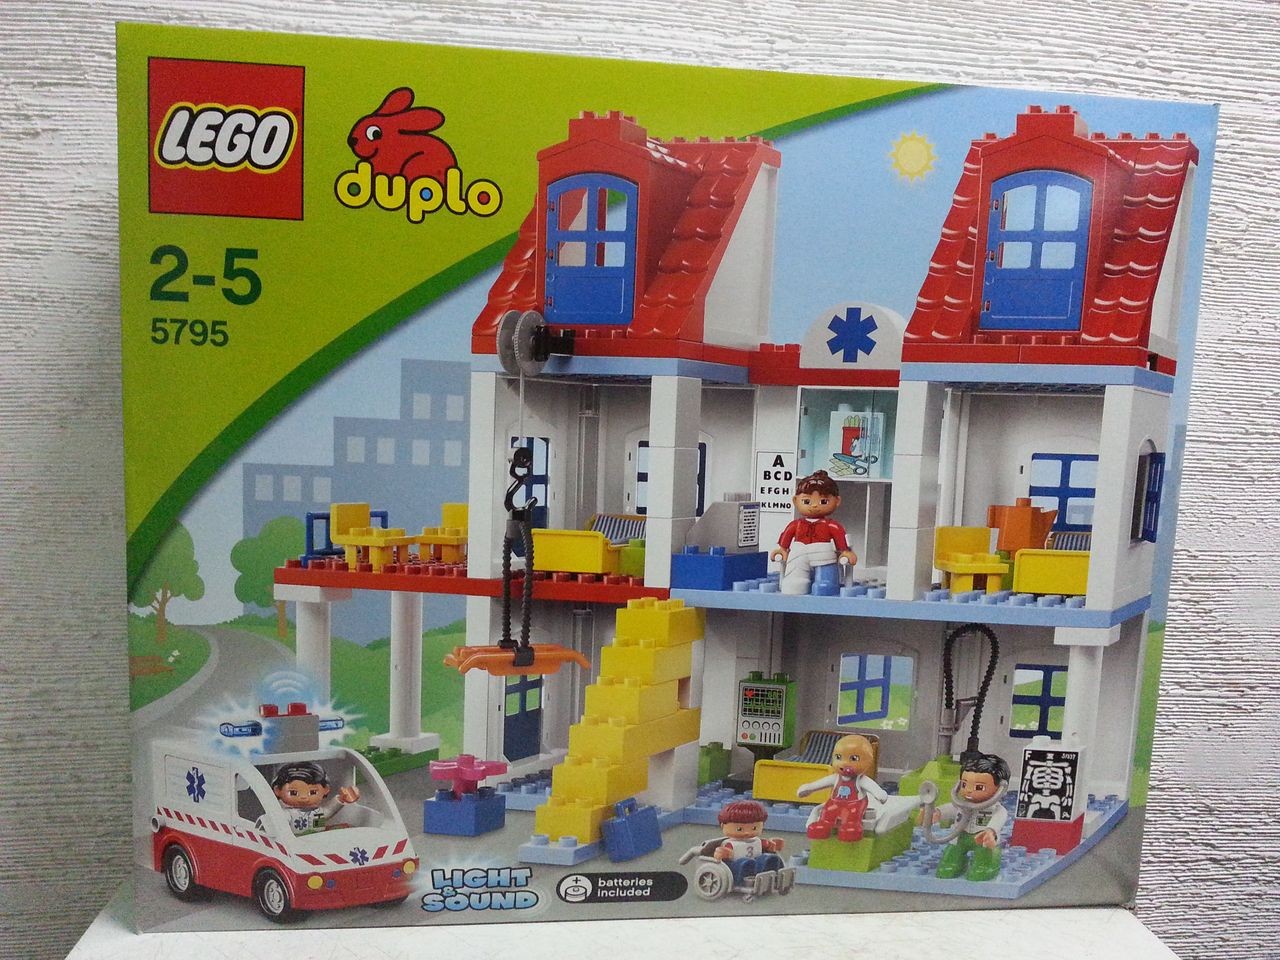 LEGO 5795 DUPLO Big City Hospital - Home Lego